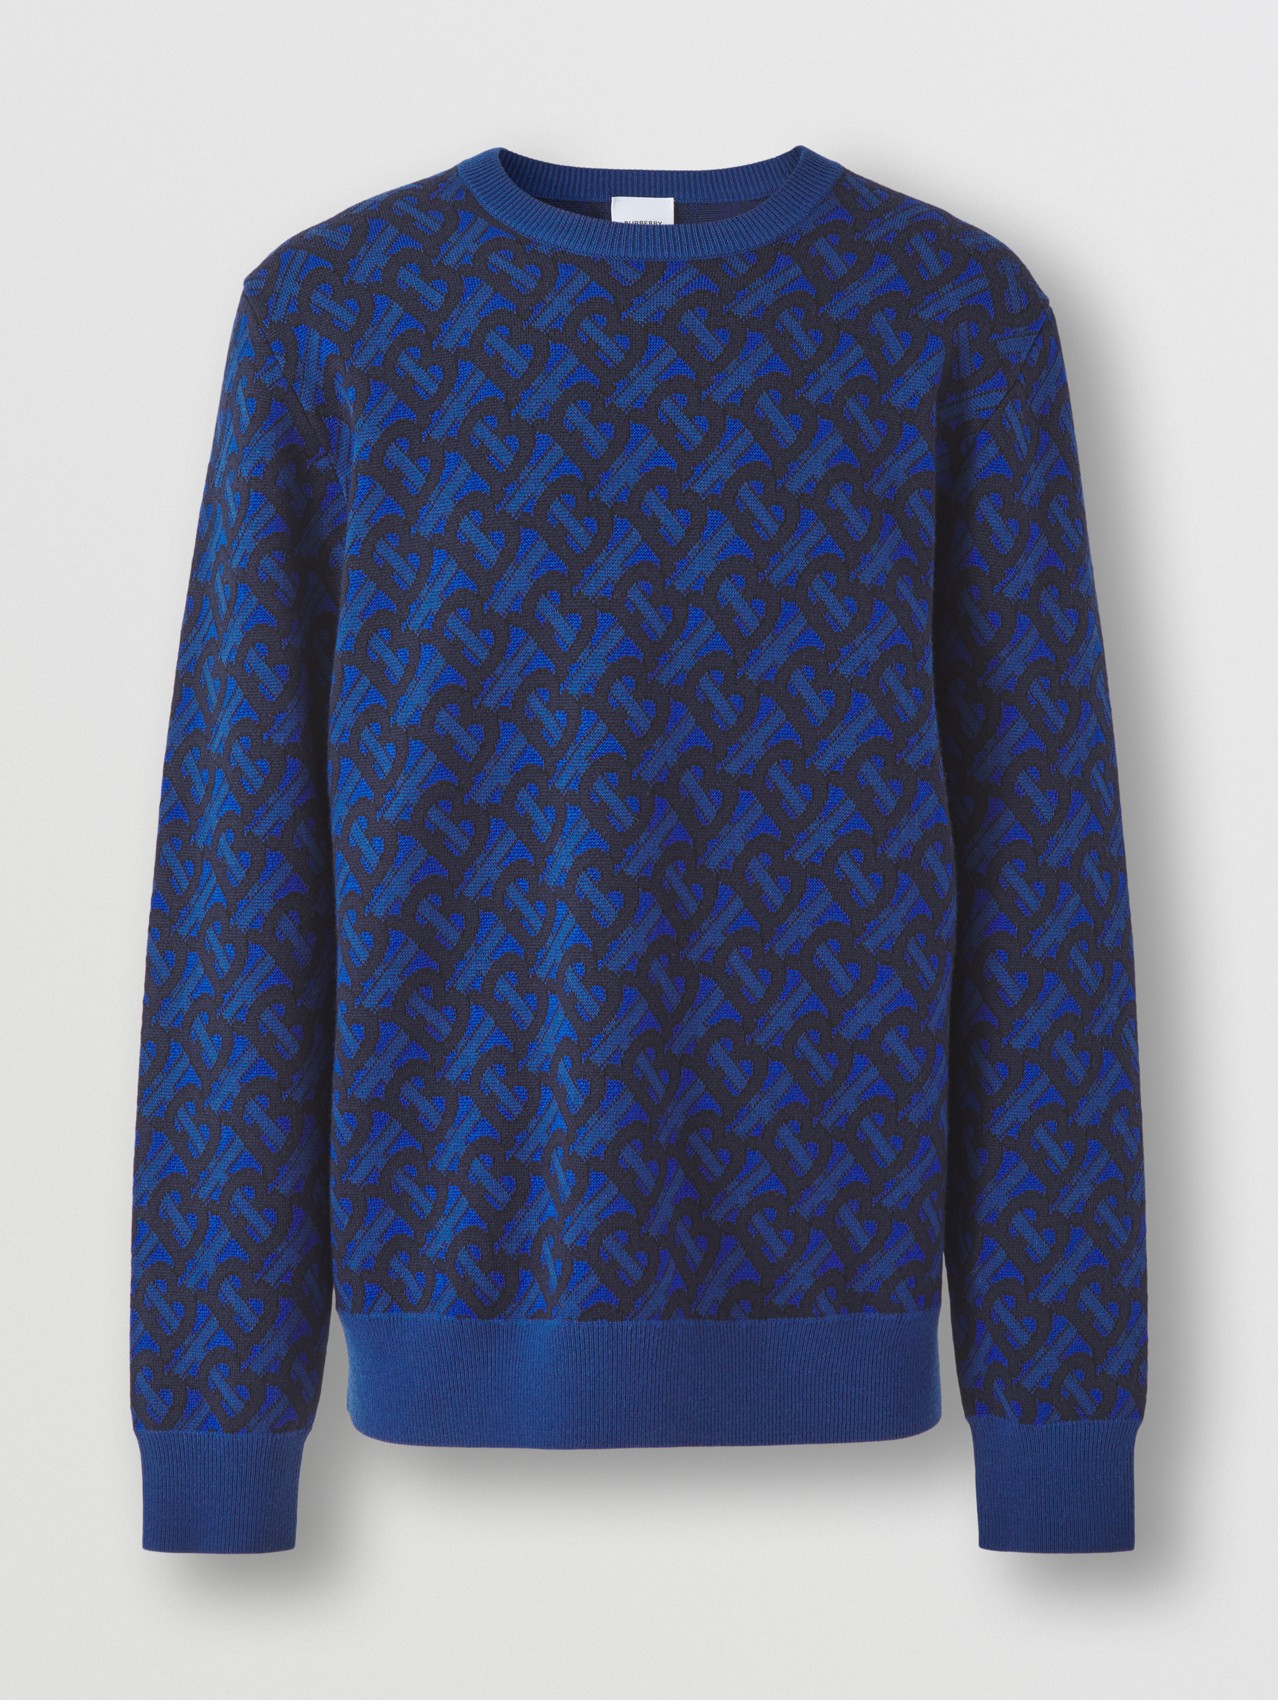 Monogram Wool Jacquard Sweater in Royal Blue